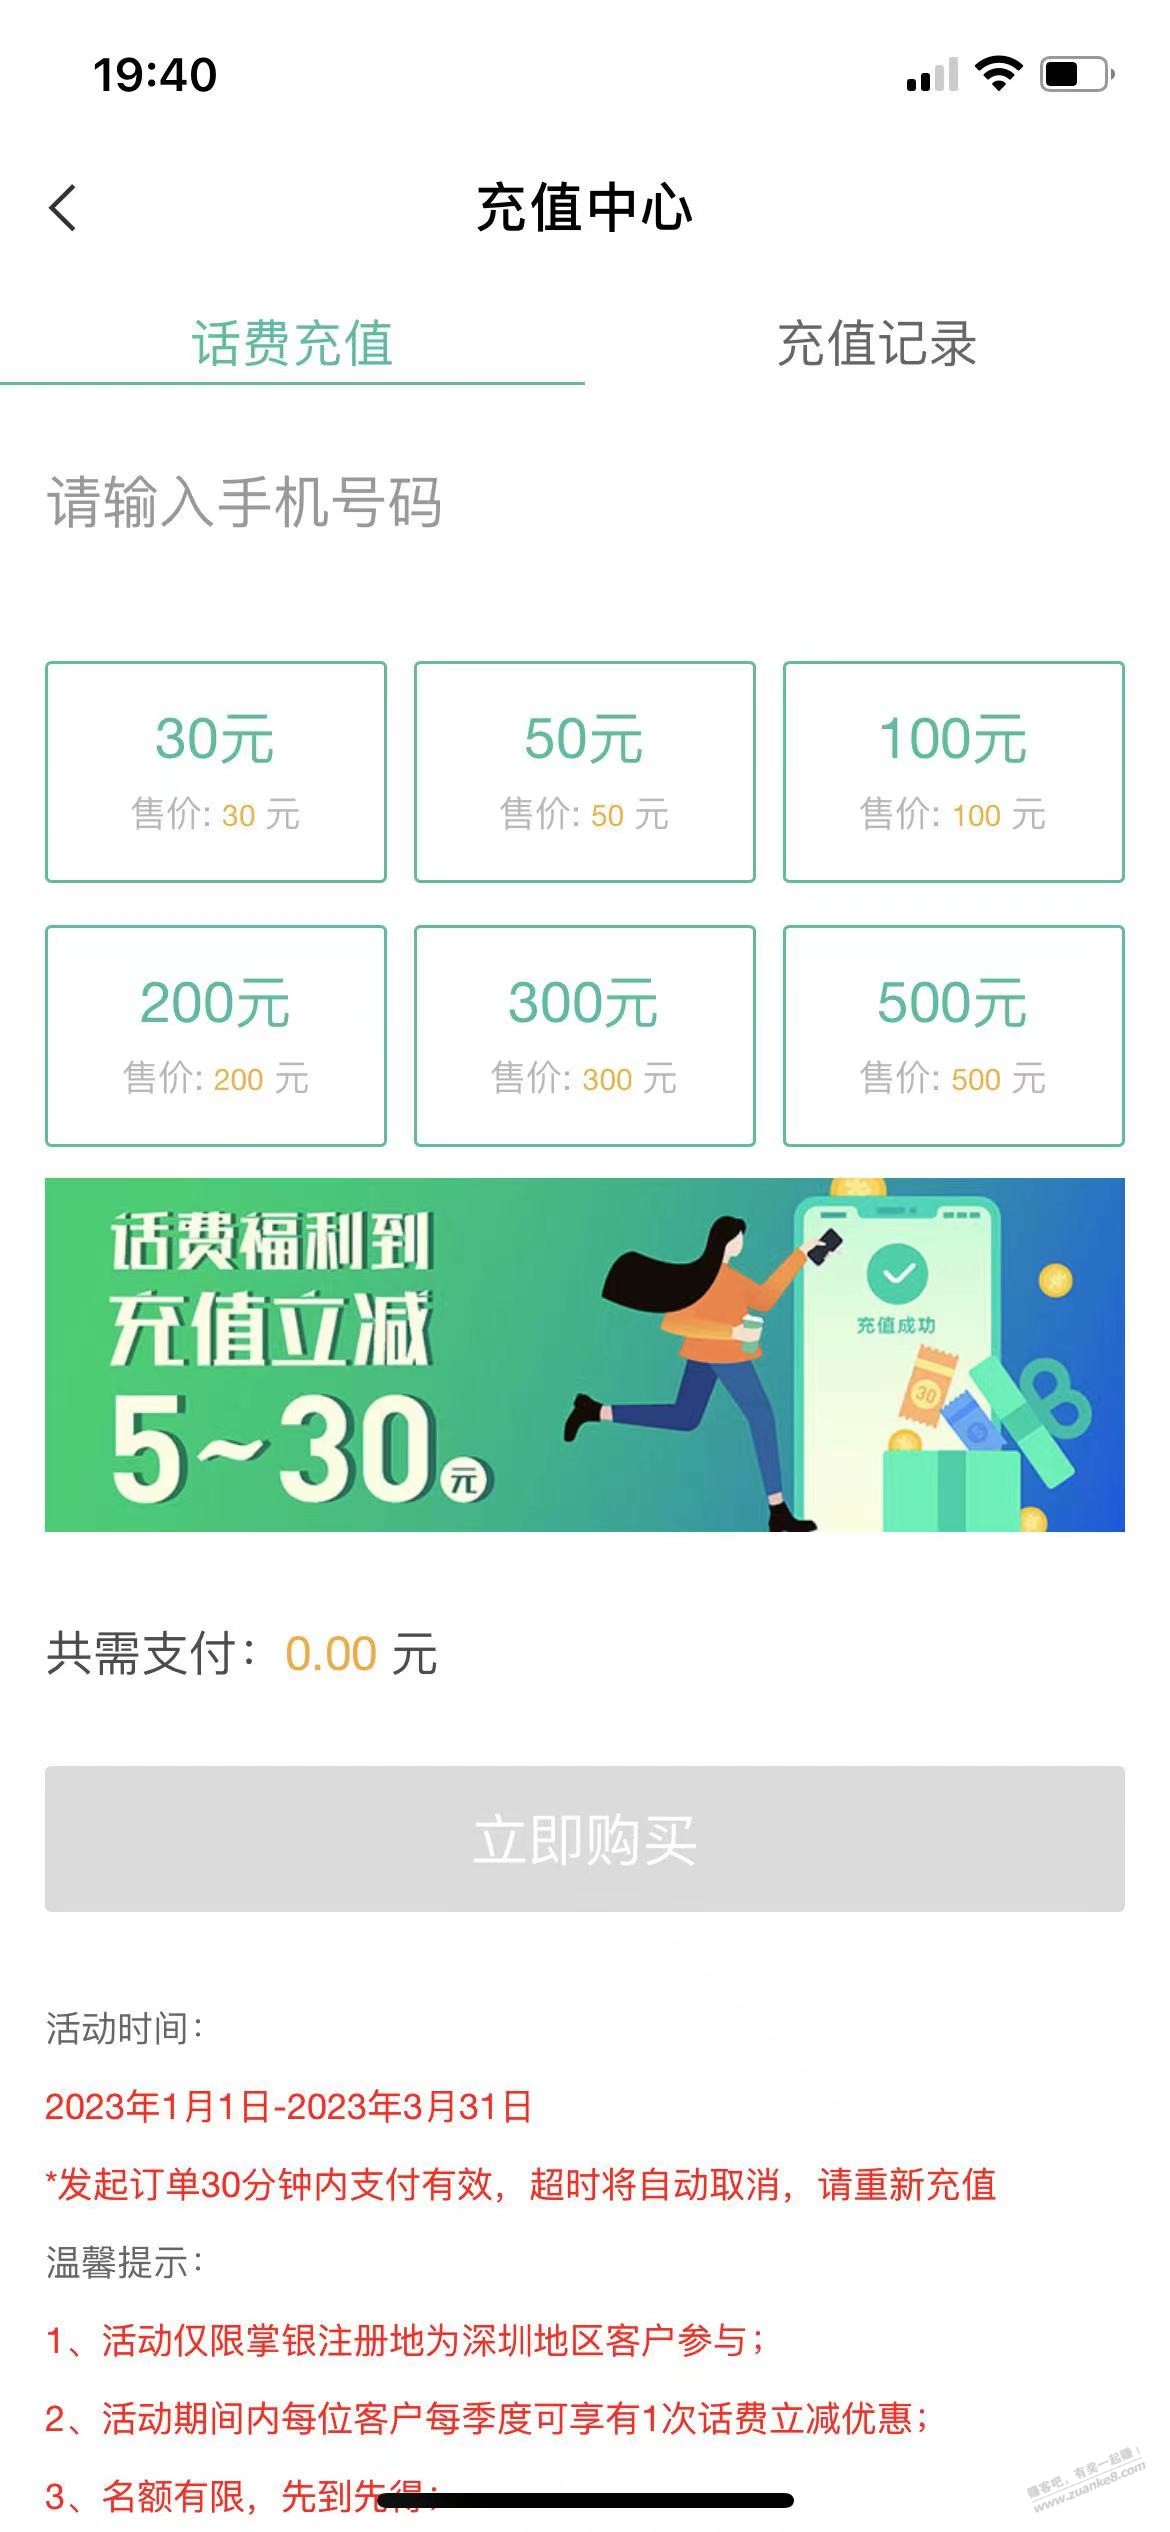 深圳农行25冲30话费-惠小助(52huixz.com)